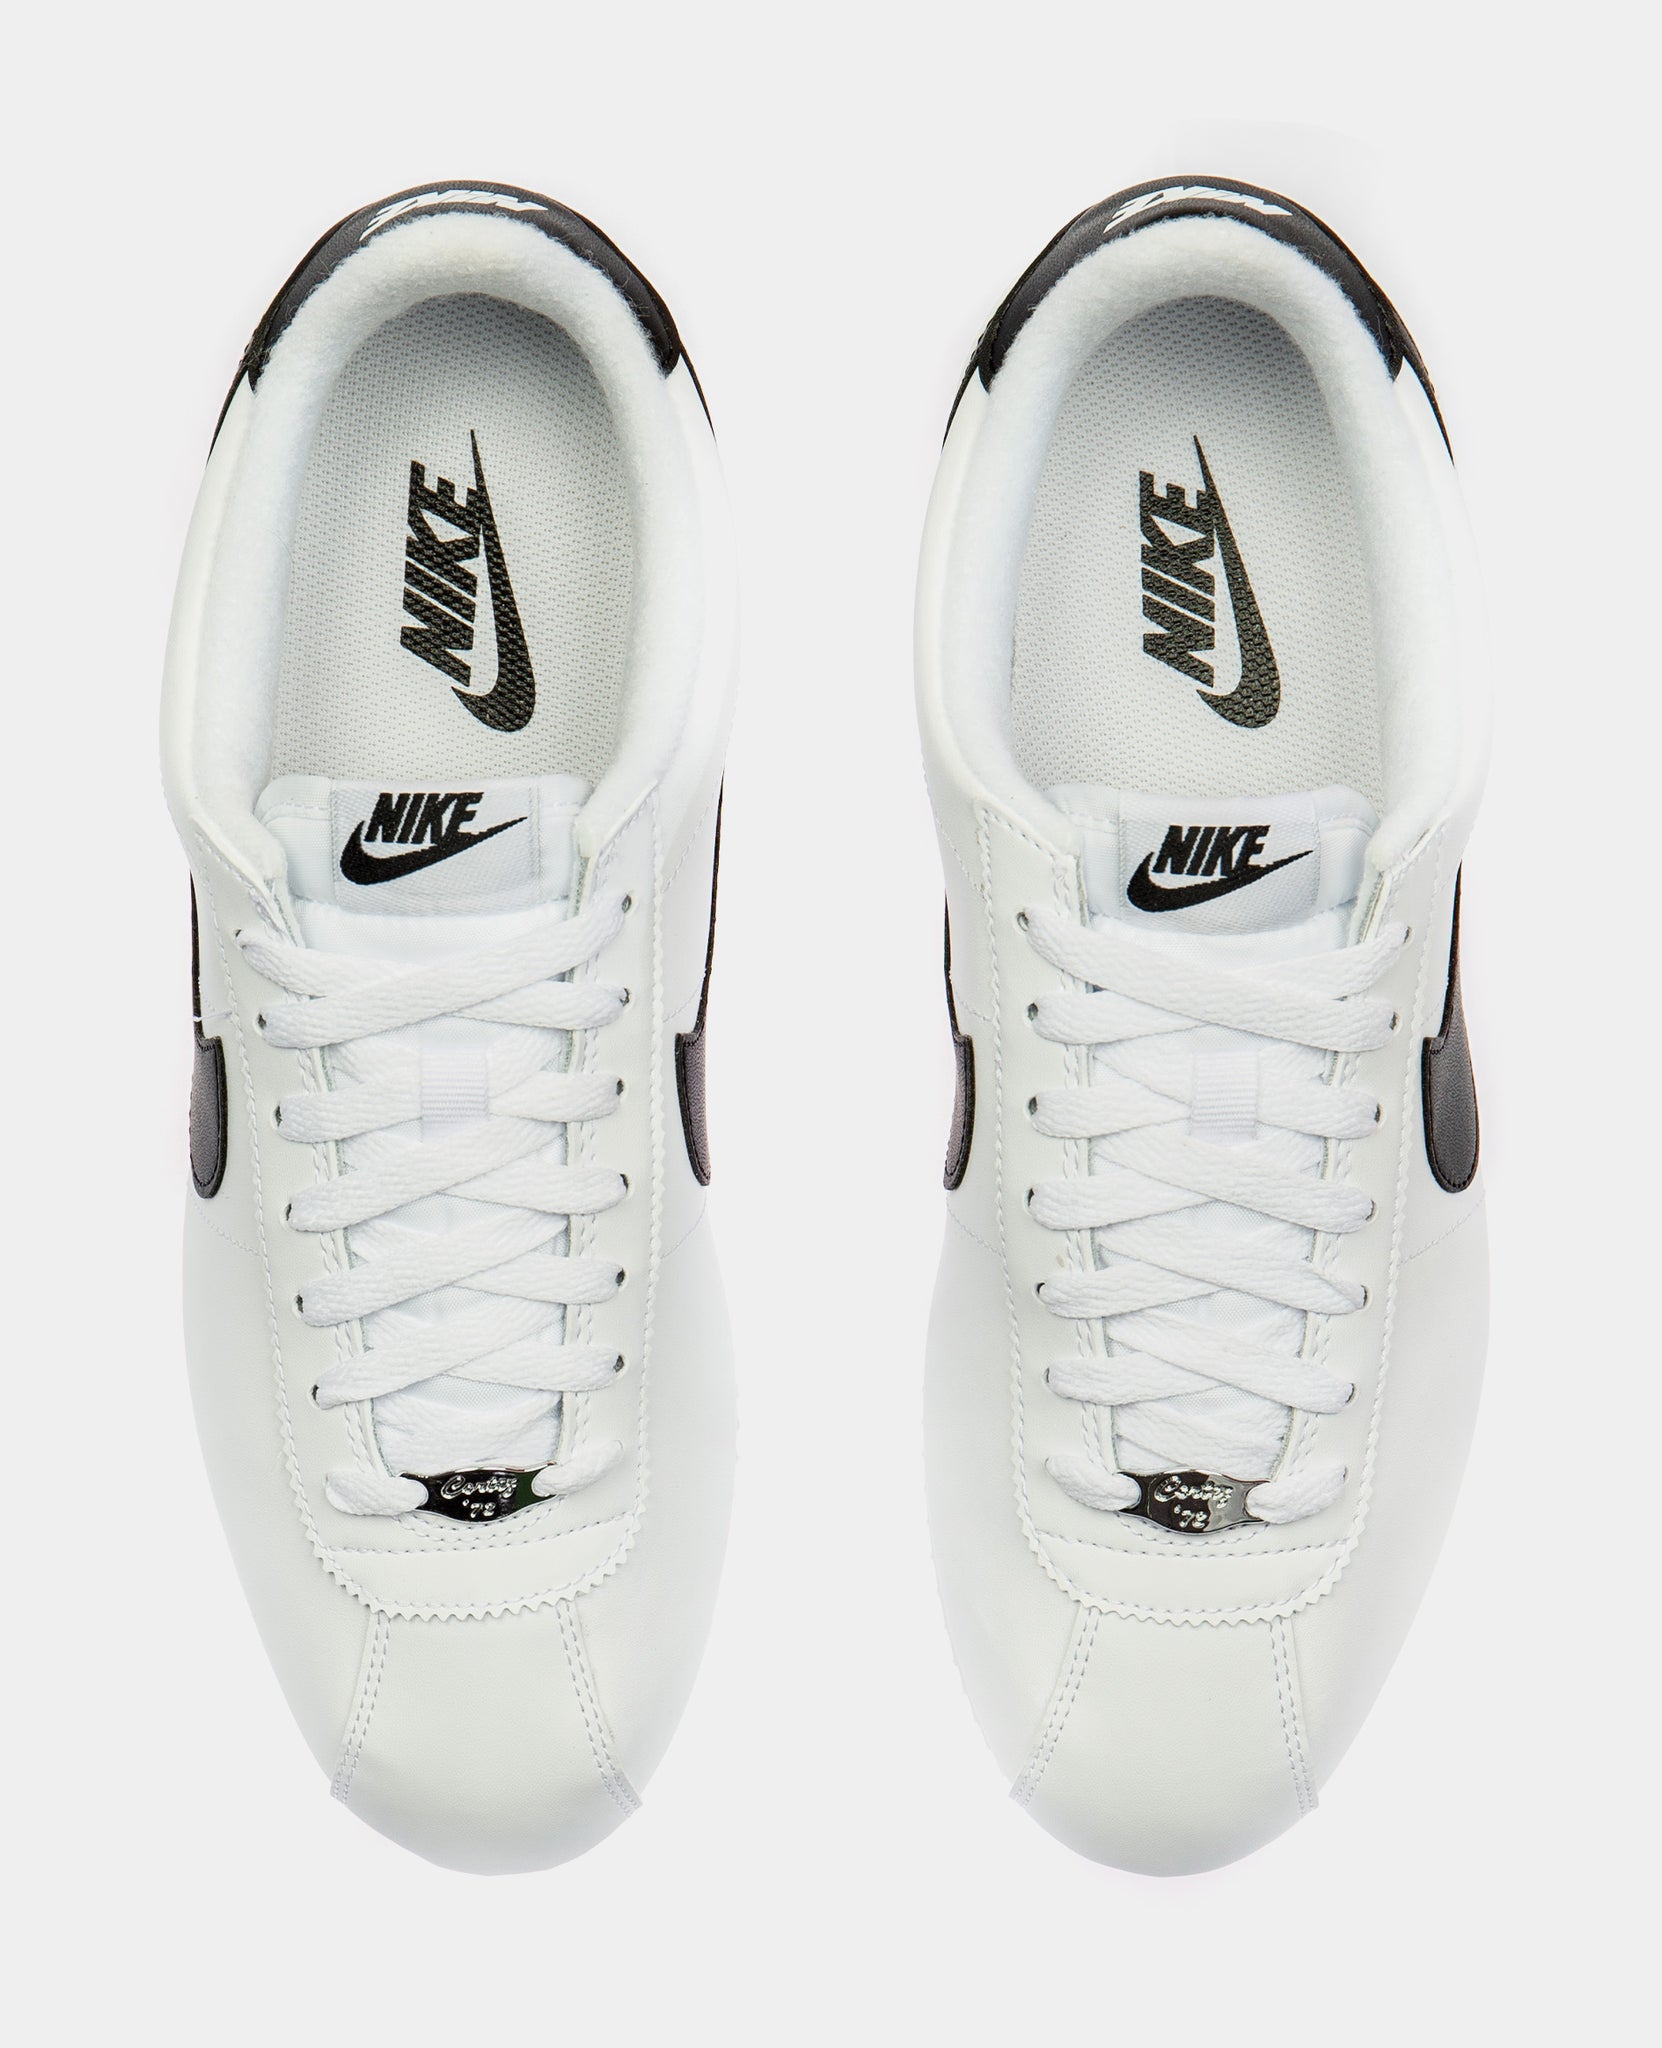 Nike Cortez Basic Leather Classic Mens Lifestyle Shoe White Black ...